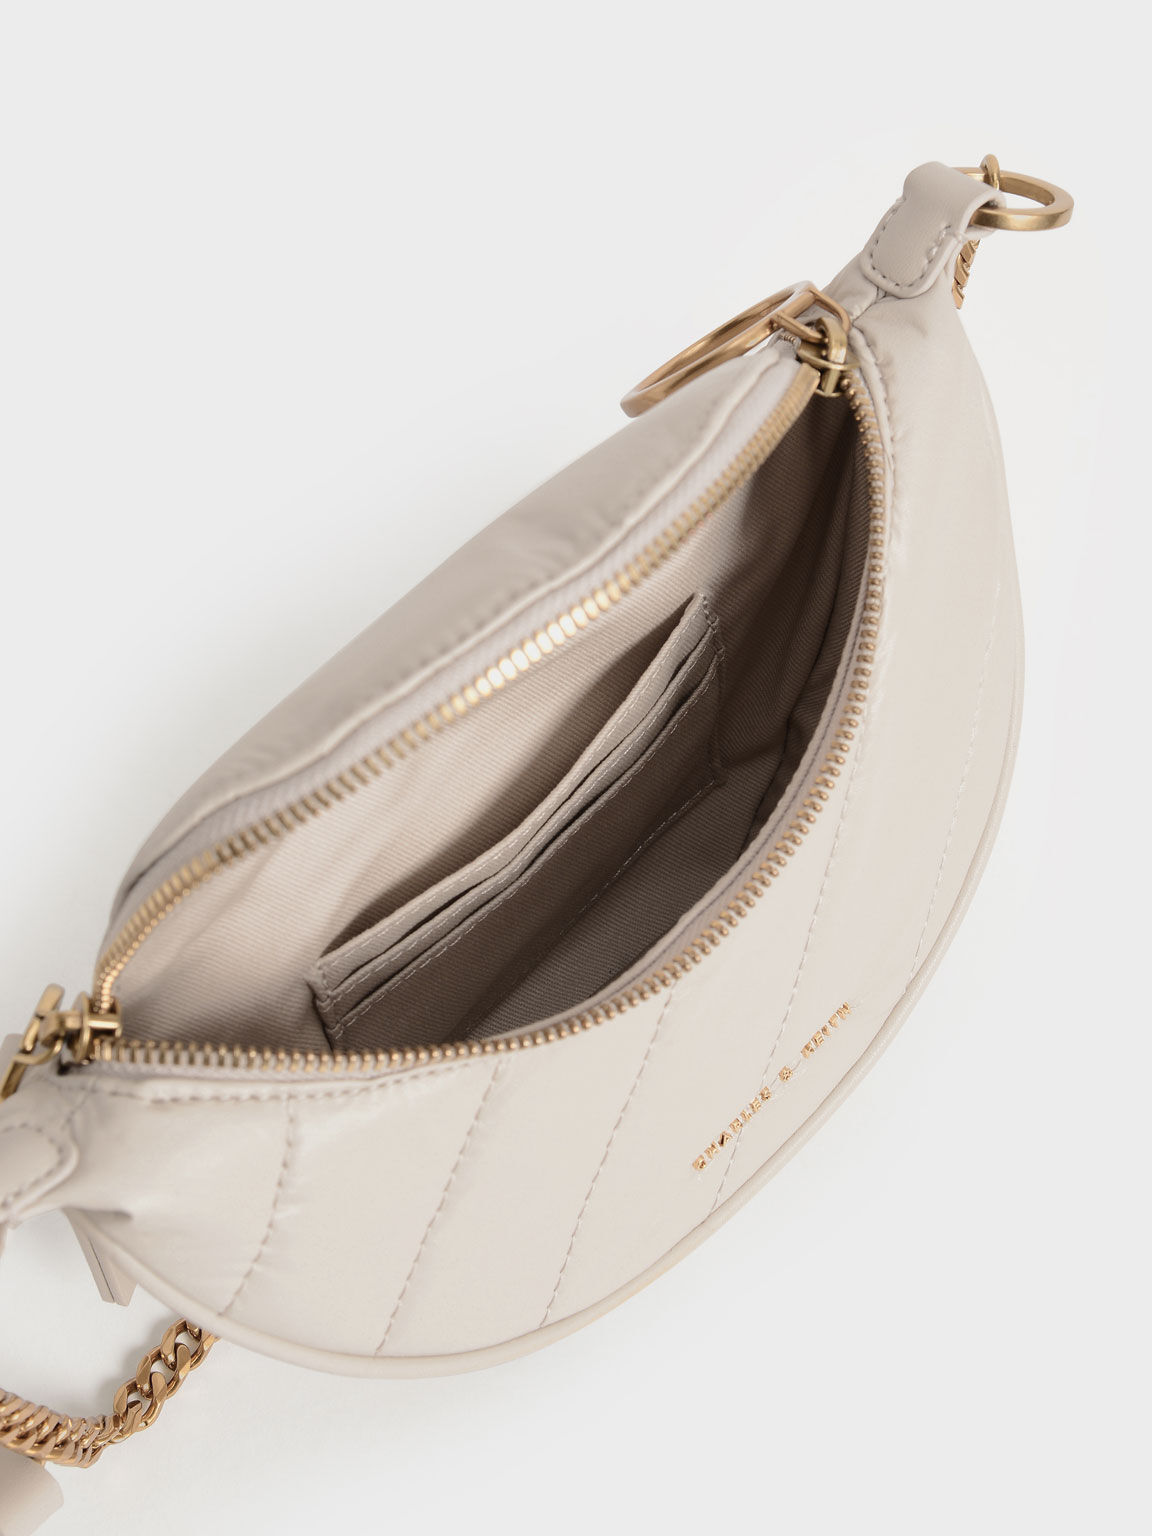 Women's Leather Half Moon Shoulder Bag 90s Crescent Handbag Toni